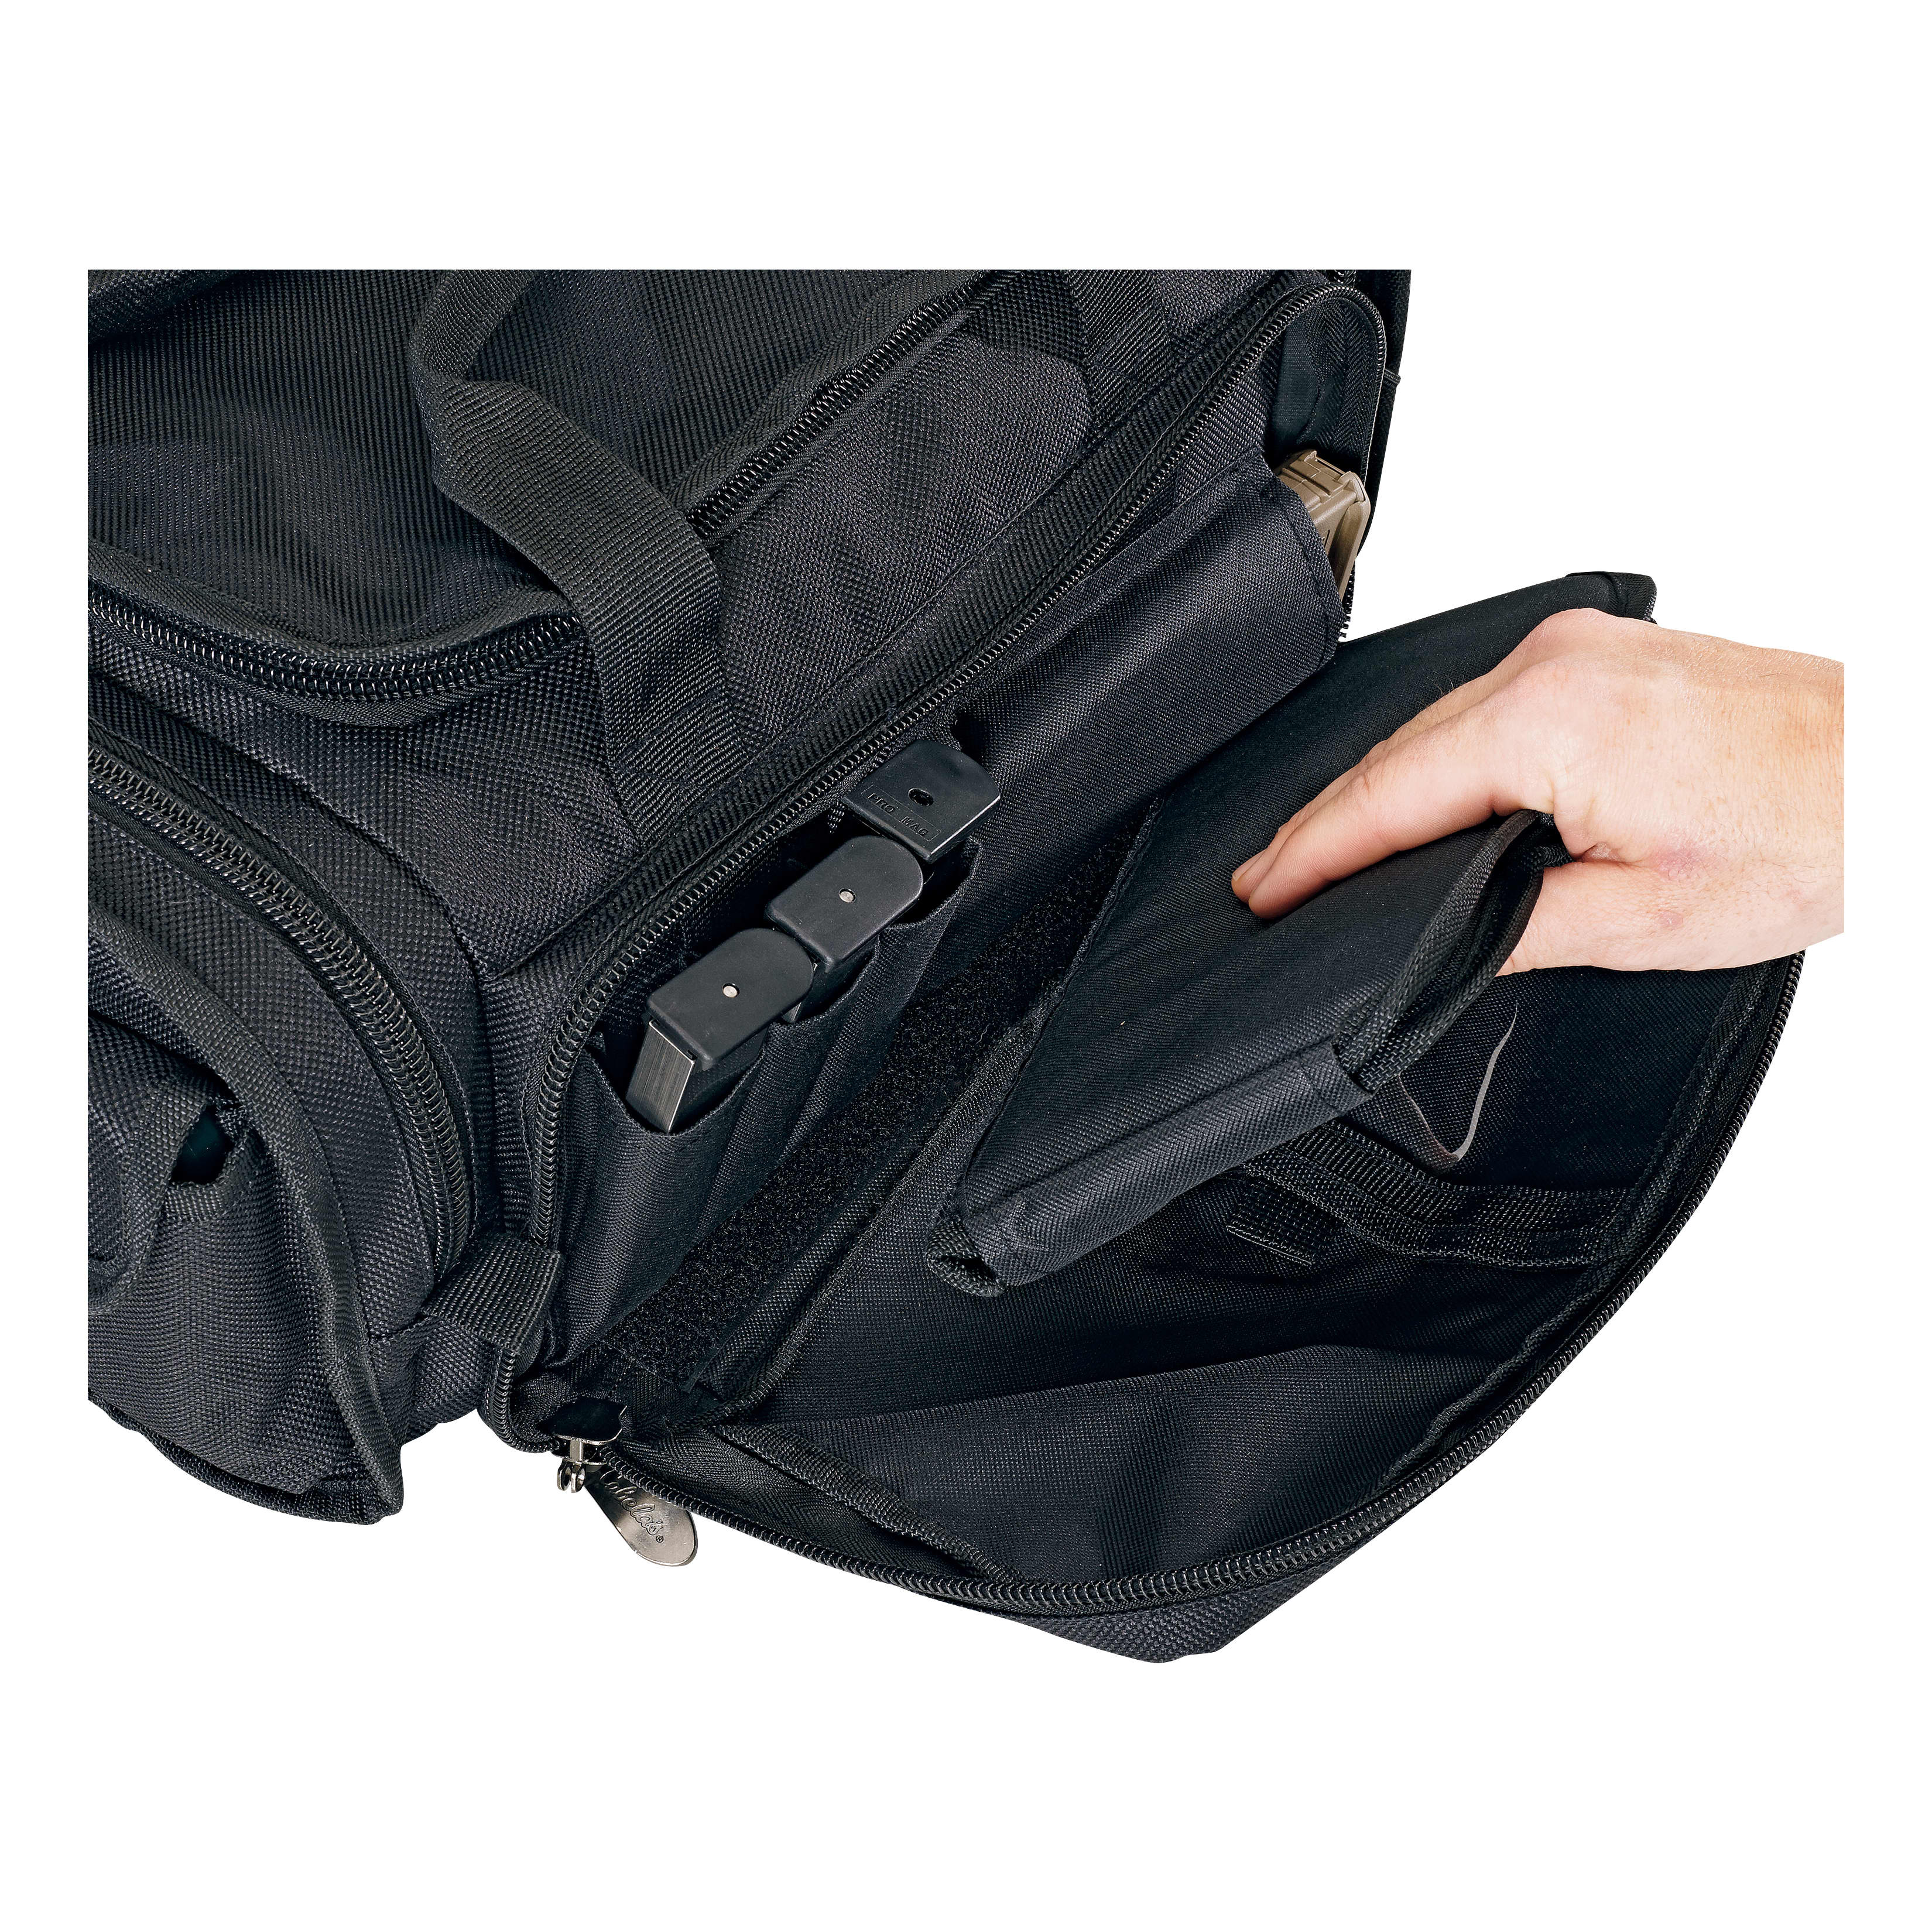 Cabela's Xtreme Range Bag - Six Pistol Magazine Sleeves